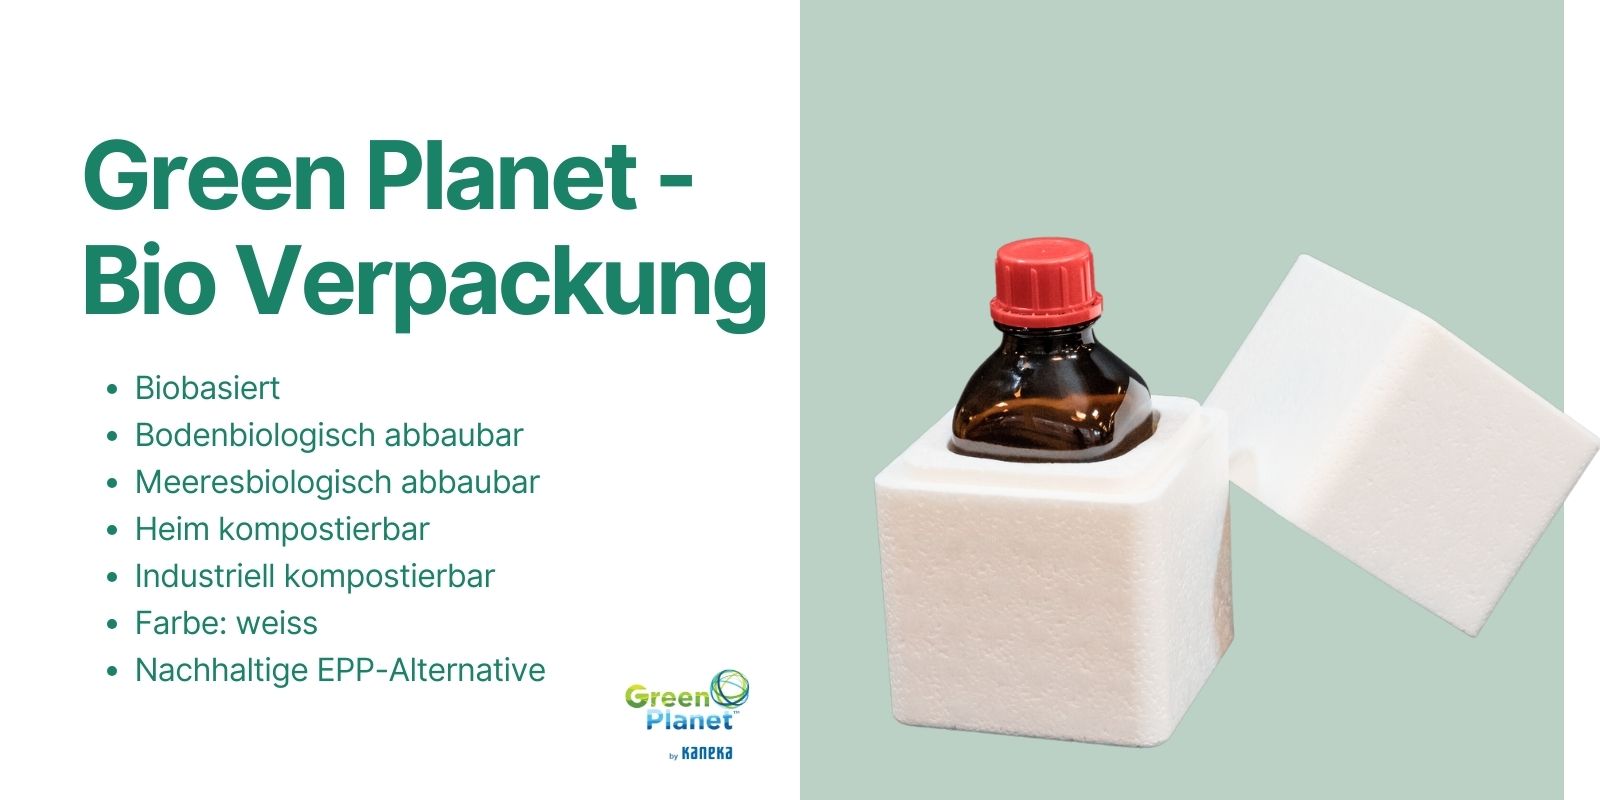 Das Bild zeigt eine Bio Verpackung: Green Planet.